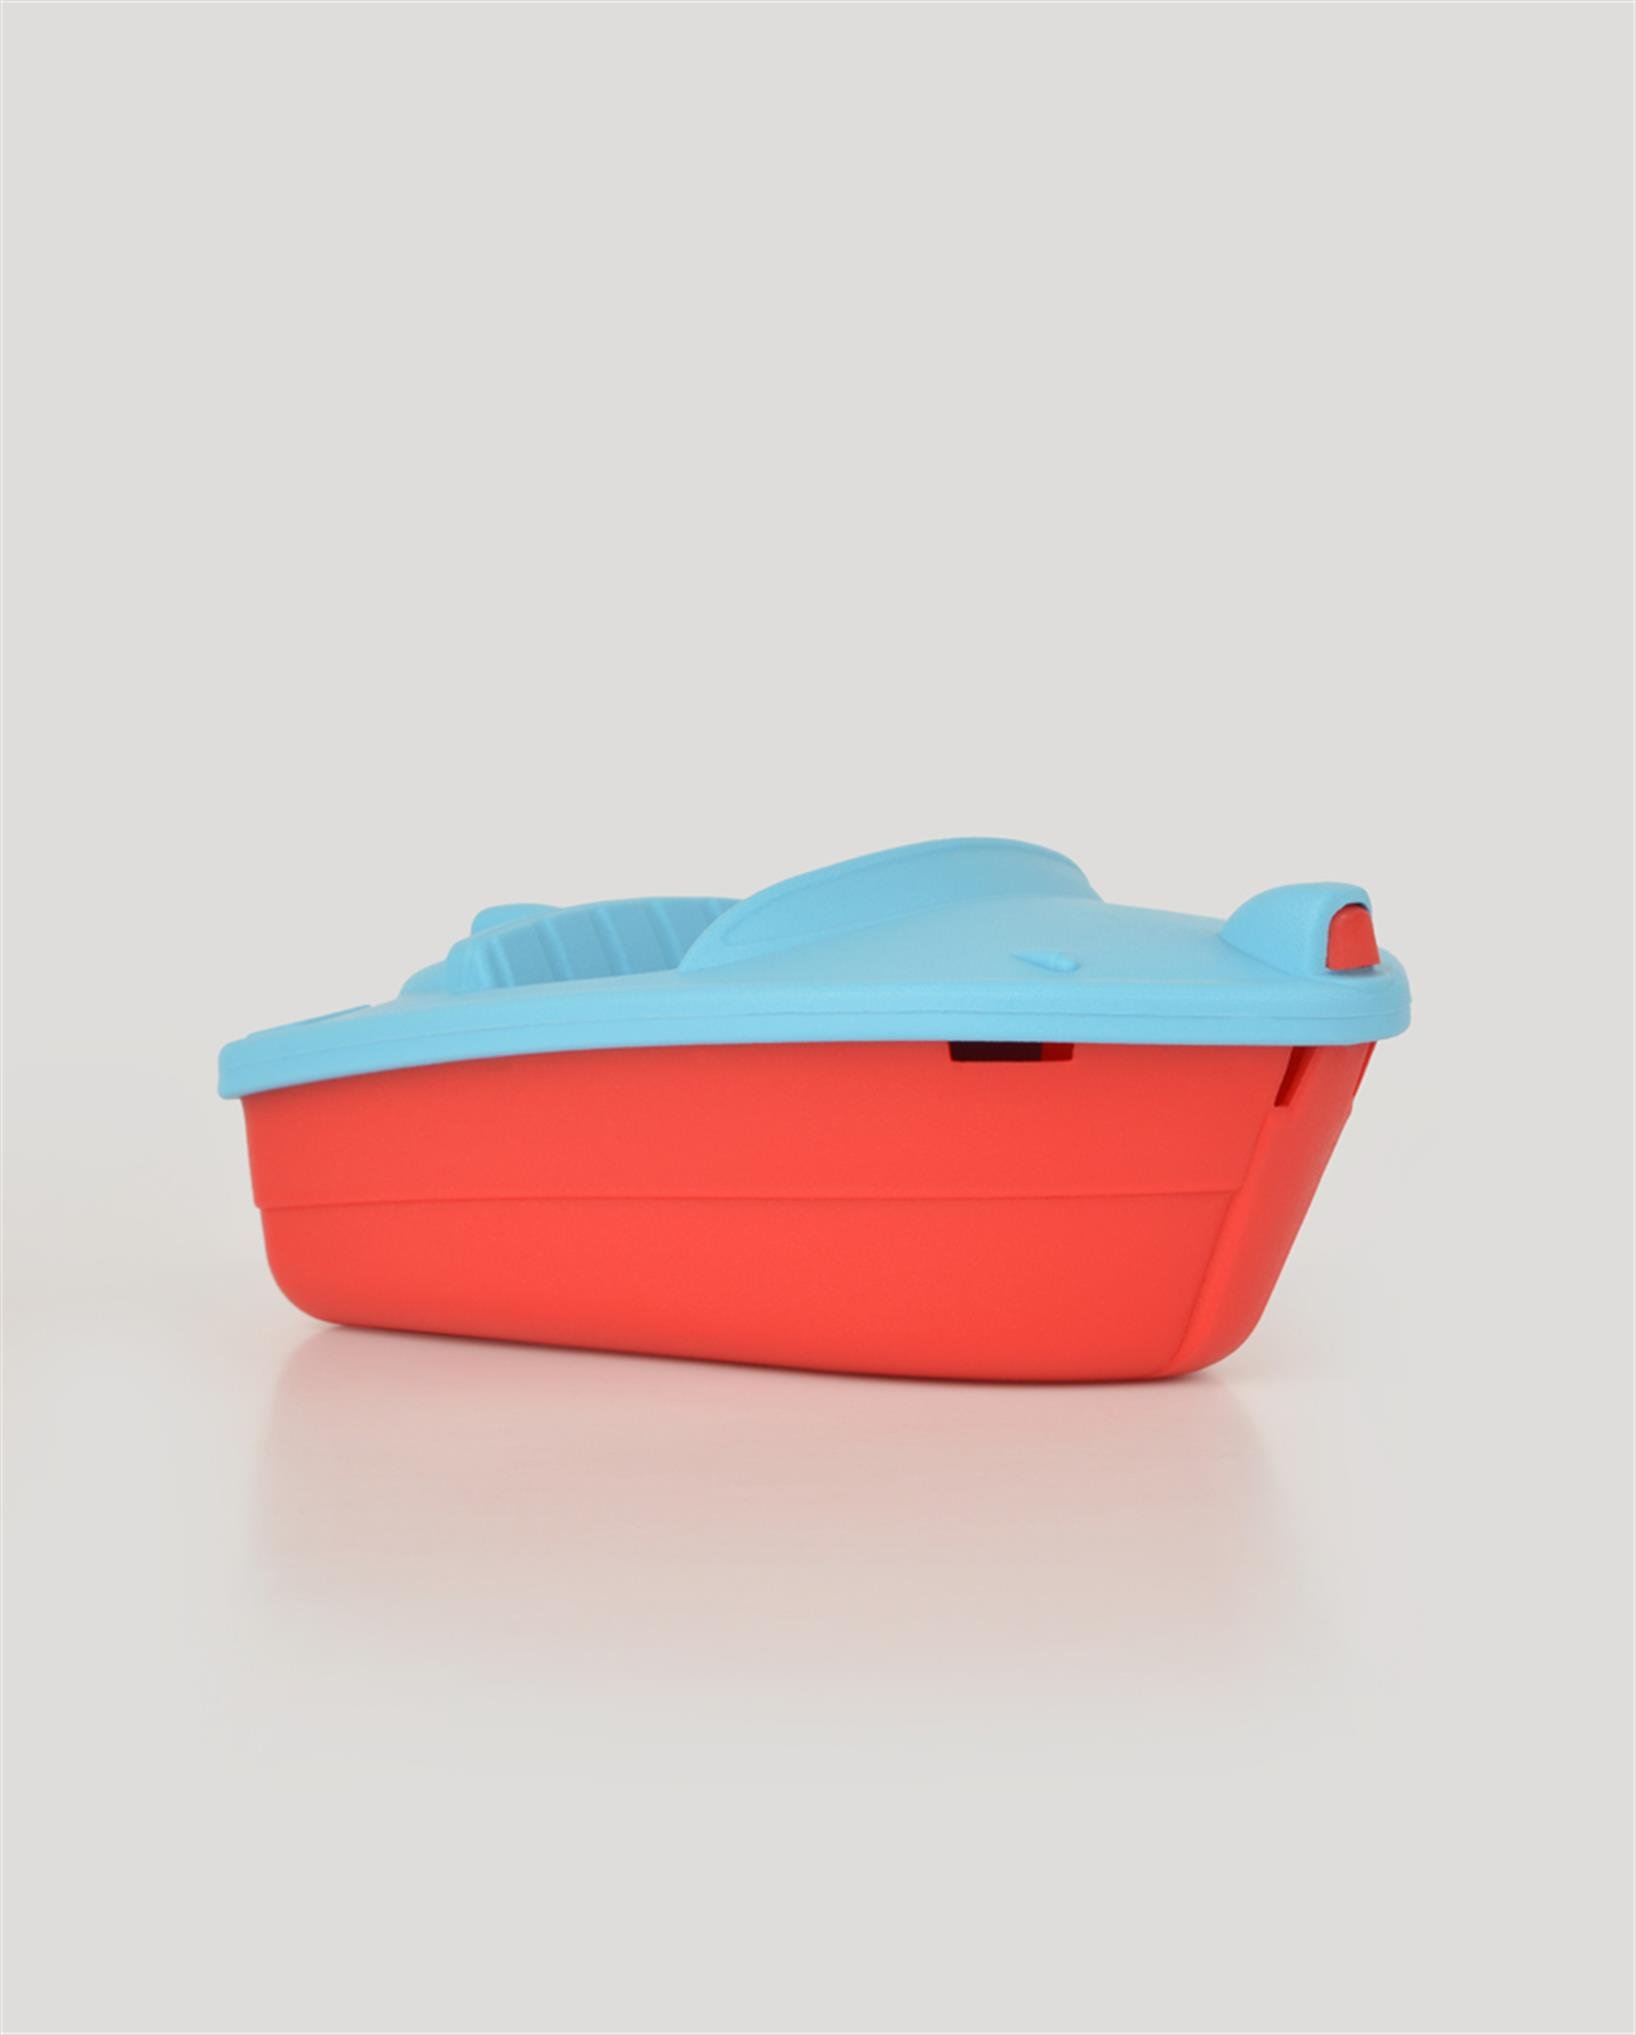 LC Oyuncak Mavi Kırmızı Minik Tekne | Let's Be Child